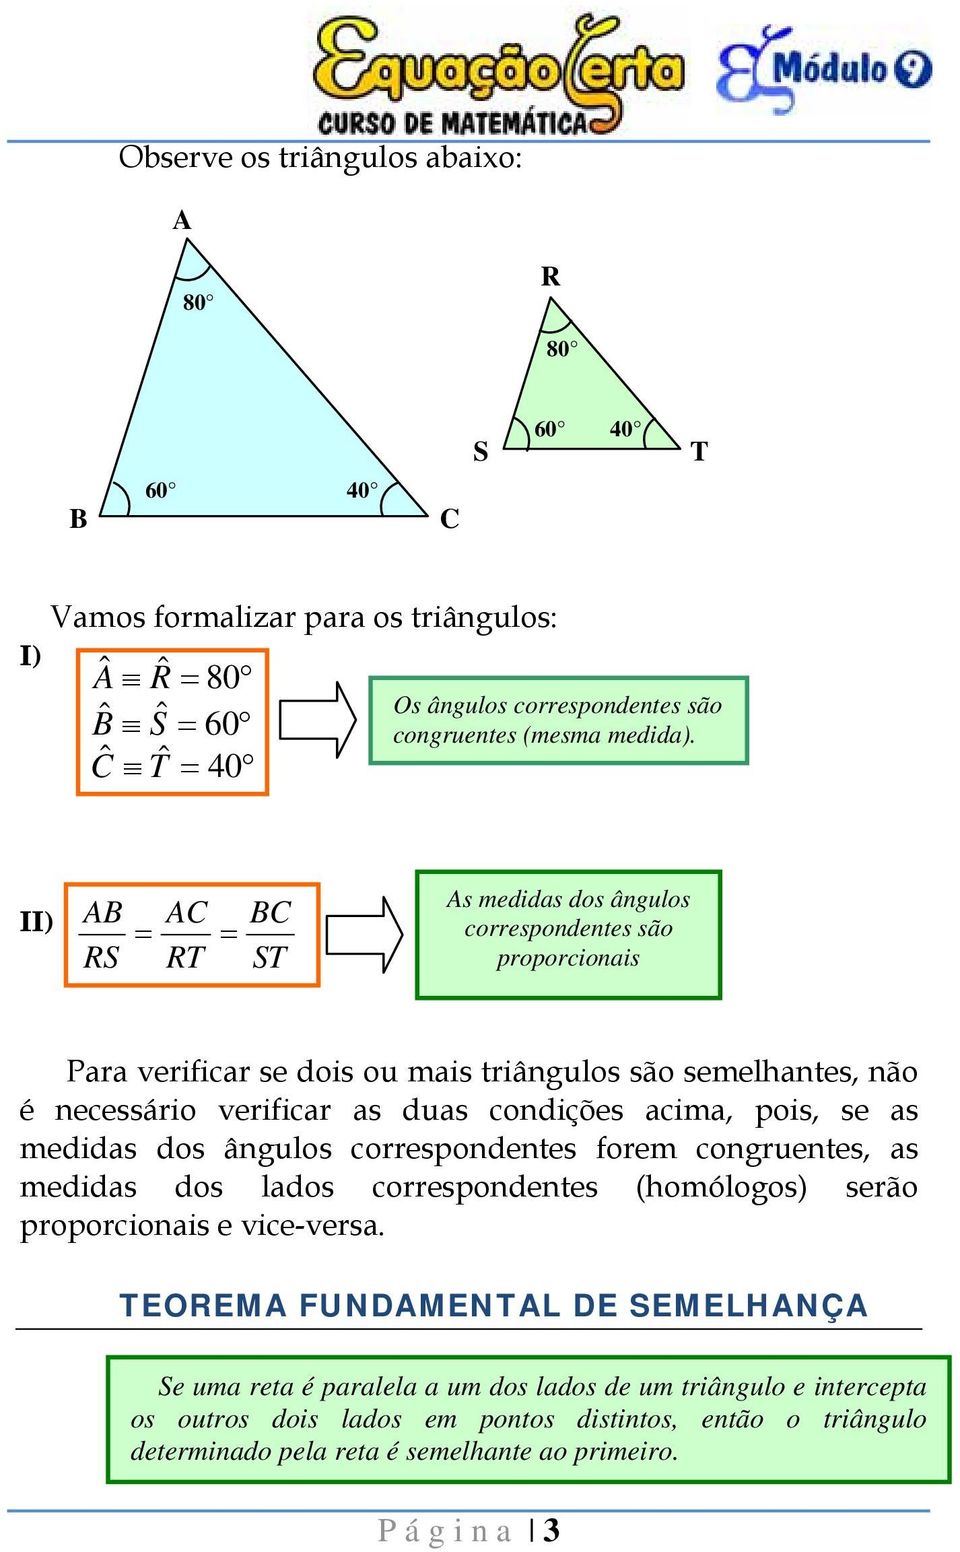 condições acima, pois, se as medidas dos ângulos correspondentes forem congruentes, as medidas dos lados correspondentes (homólogos) serão proporcionais e vice-versa.